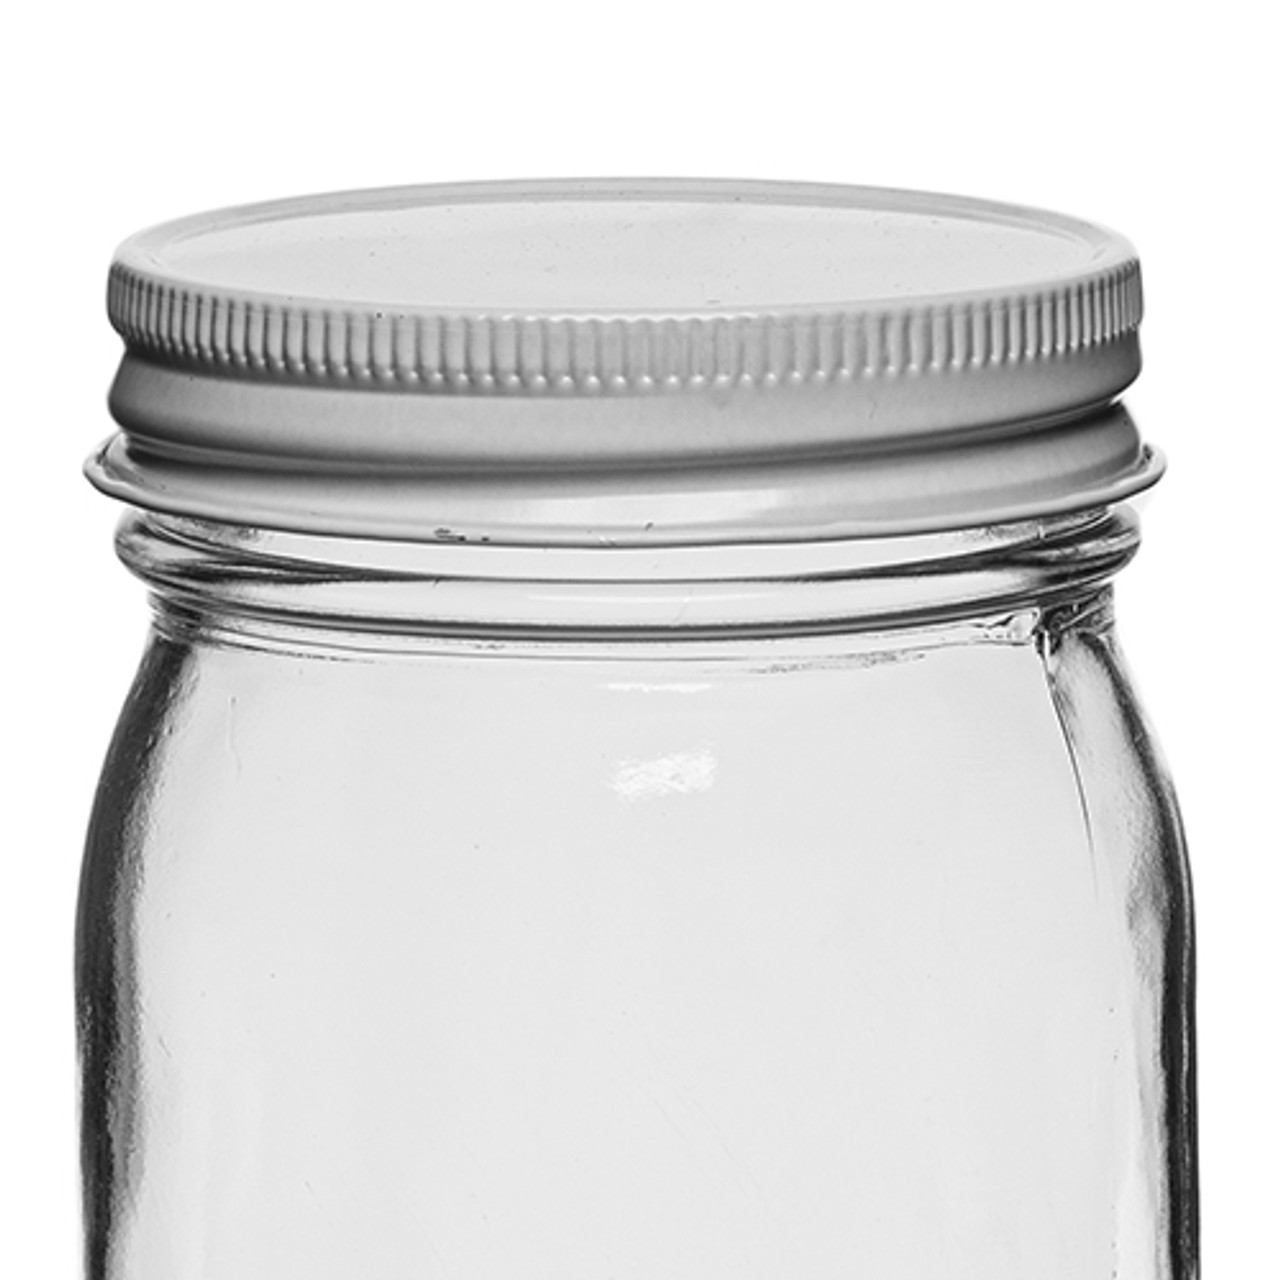 16 oz. Jar Store Economy Jar